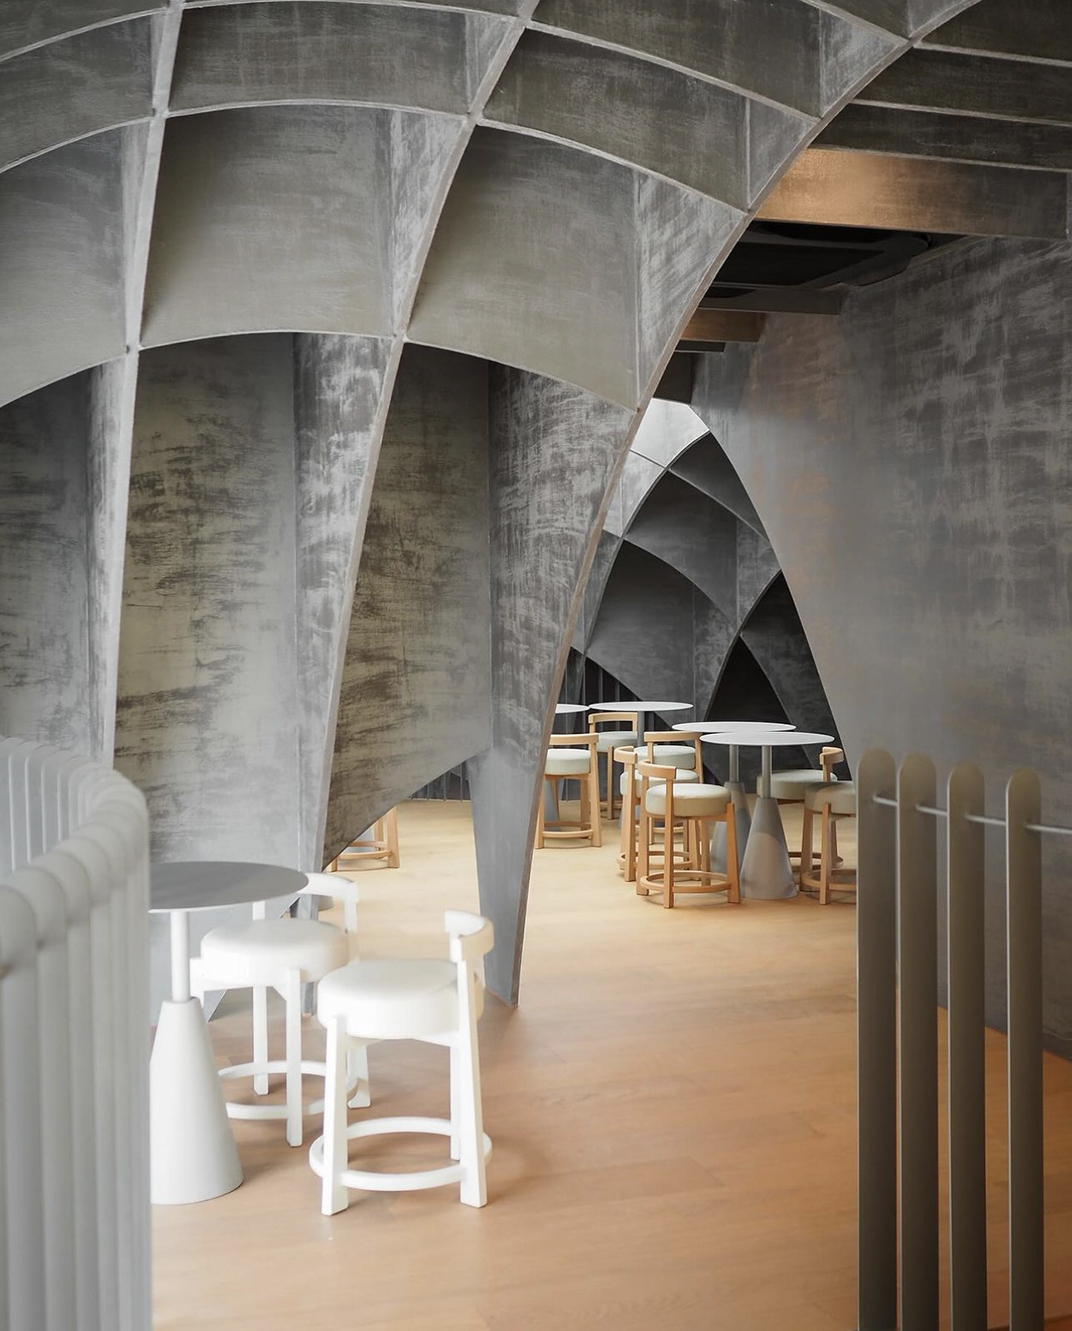 弯曲洞穴棕色调咖啡馆nanacoffee 泰国 深圳 上海 北京 广州 武汉 咖啡店 餐饮商业 logo设计 vi设计 空间设计